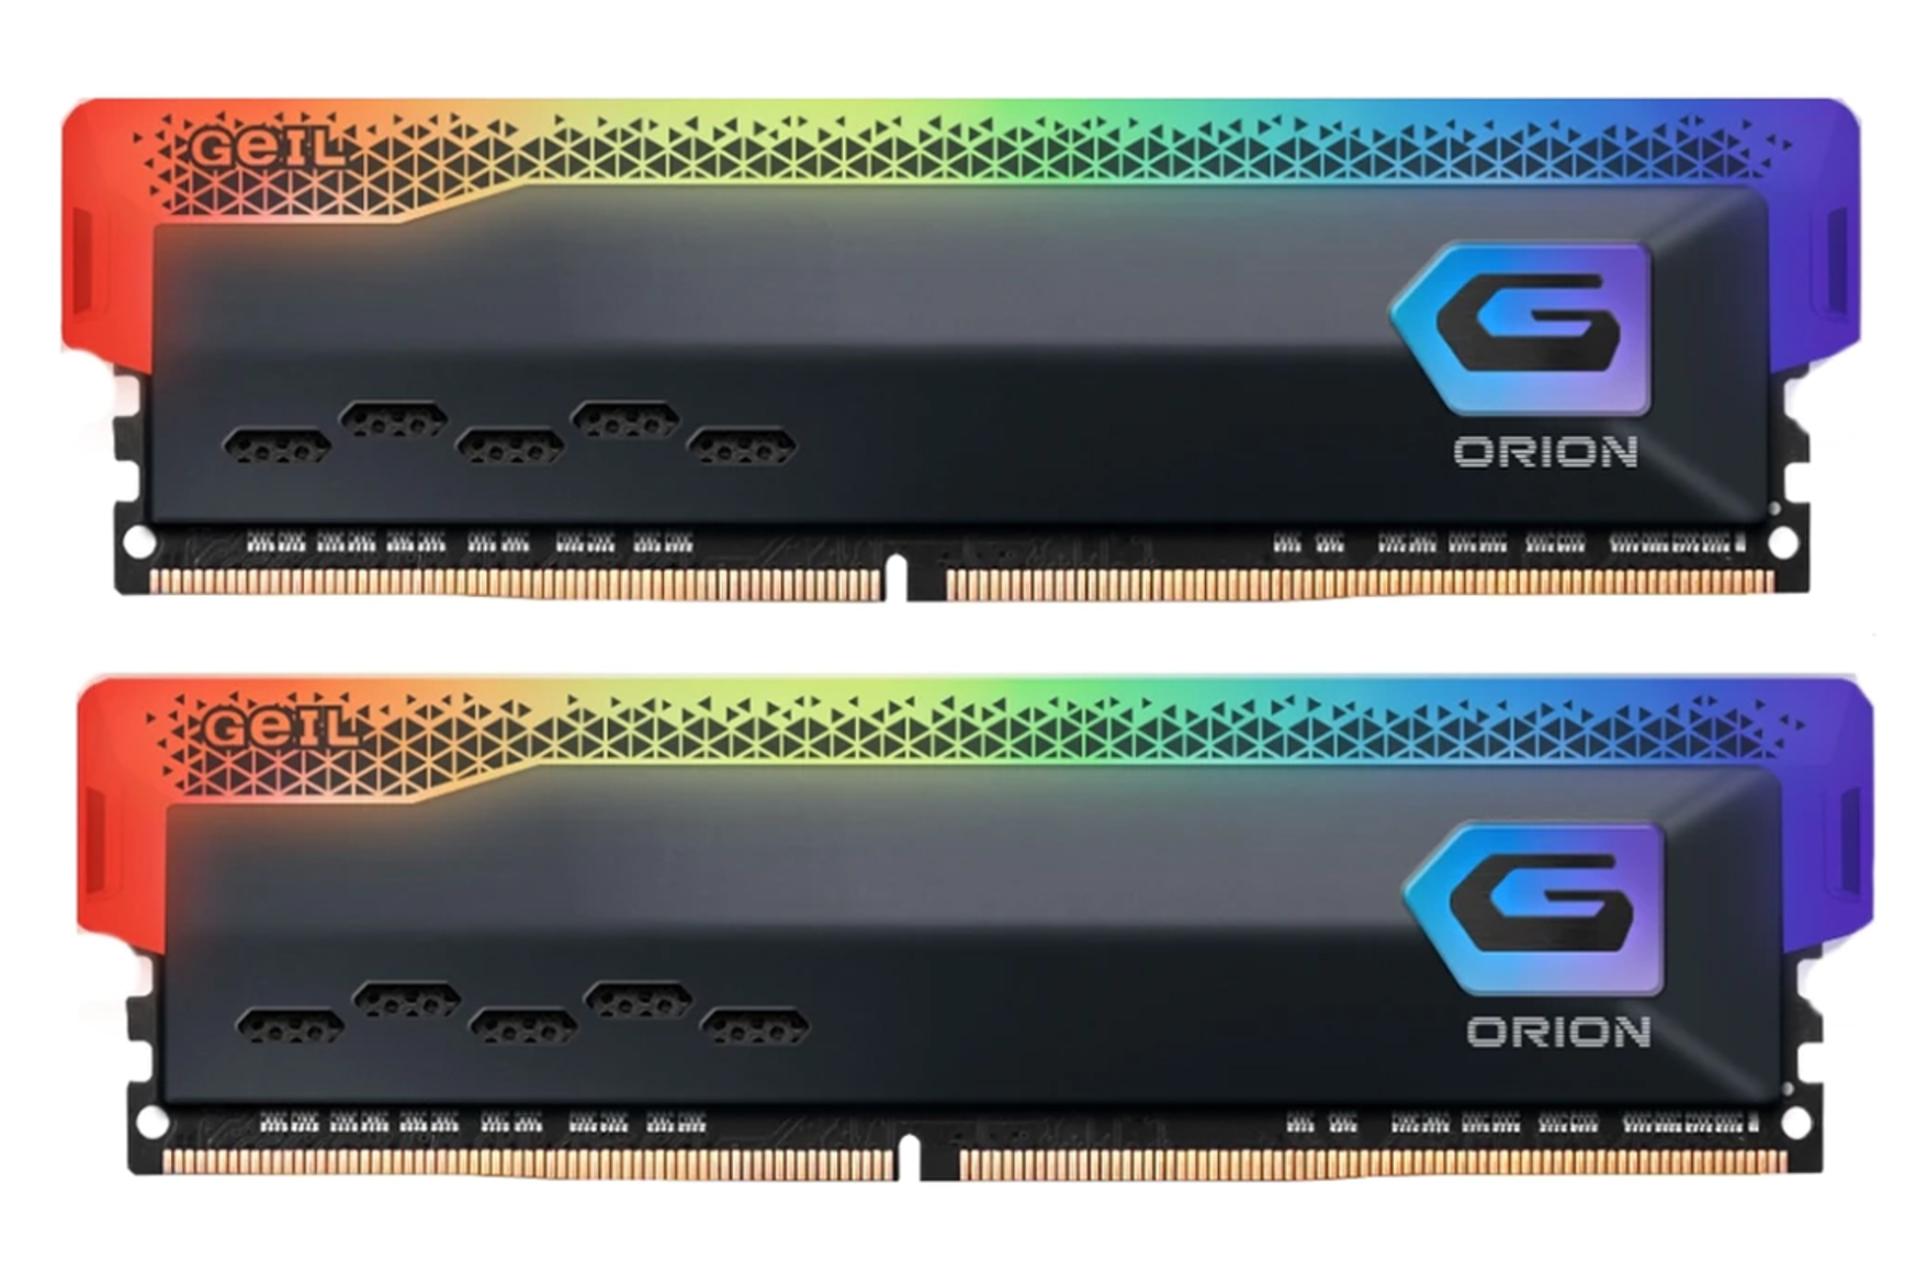 نمای جلو رم گیل ORION RGB ظرفیت 16 گیگابایت (2x8) از نوع DDR4-3200